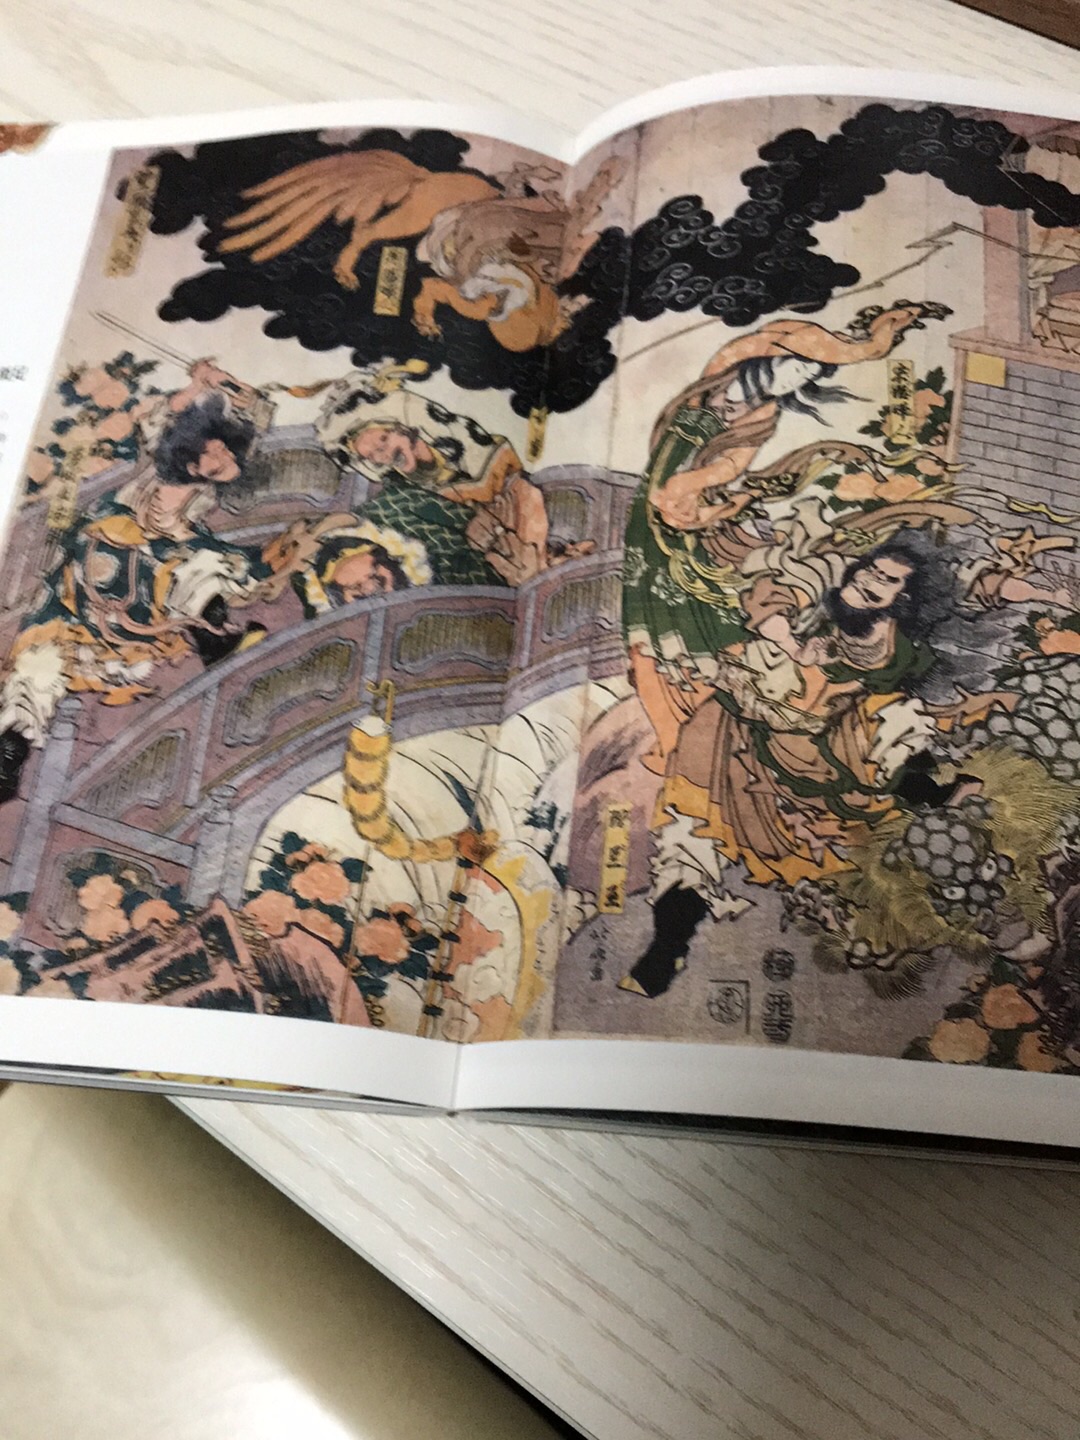 最近在玩网易新出的决战平安京。所以买这本书，很应景。装帧漂亮，浮世绘也很美。